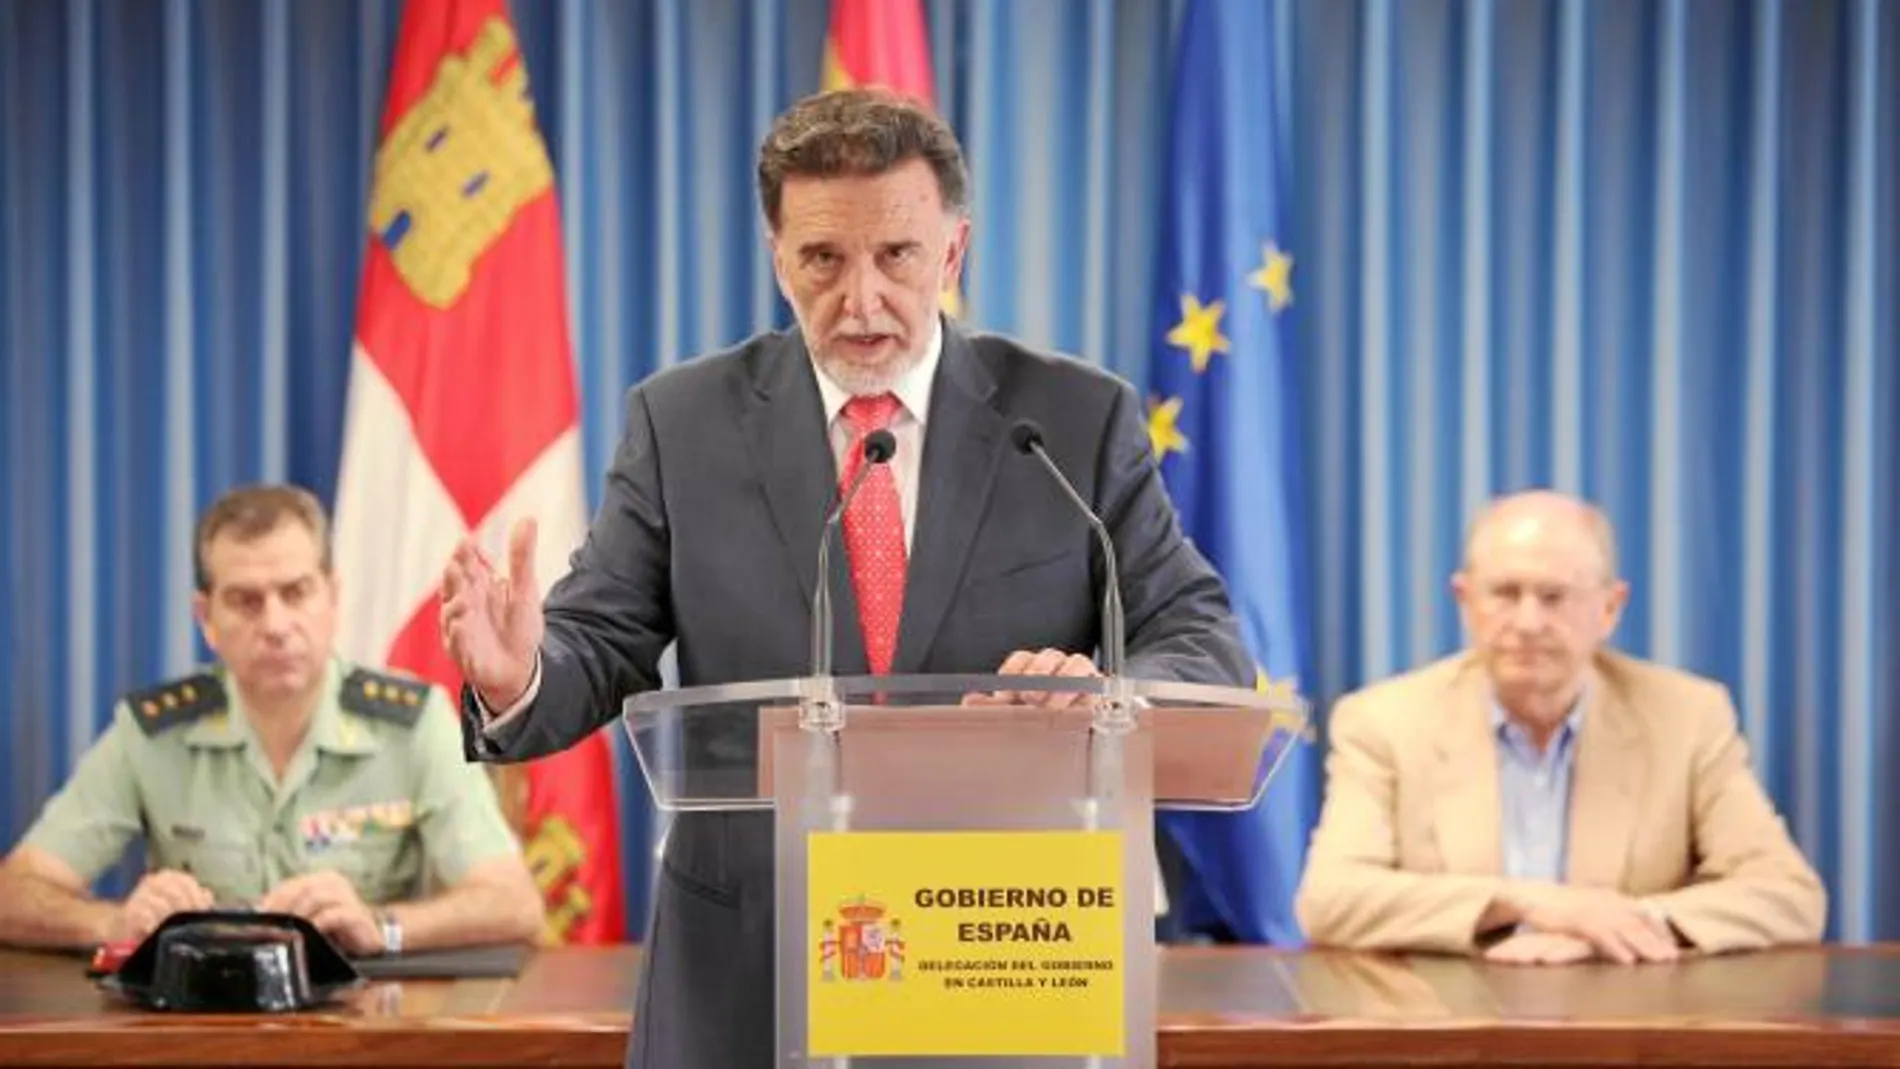 El delegado del Gobierno, Miguel Alejo, presenta el dispositivo de seguridad para las Jornadas de la Juventud